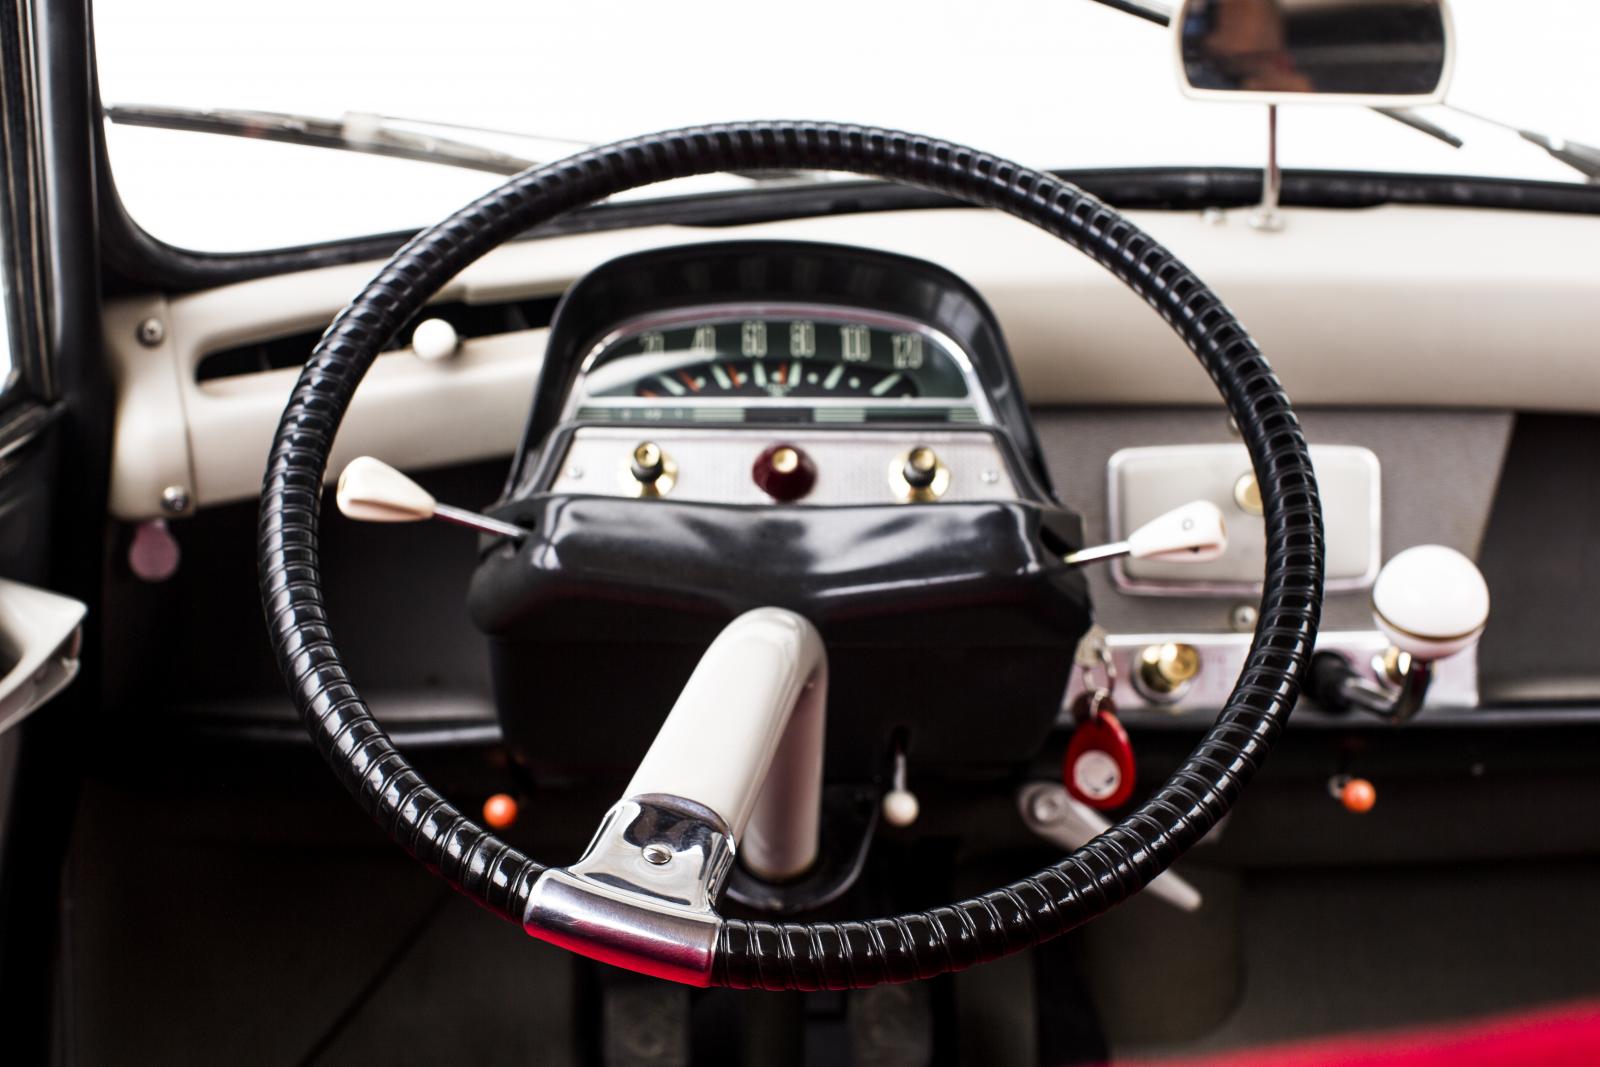 AMI 6 steering wheel